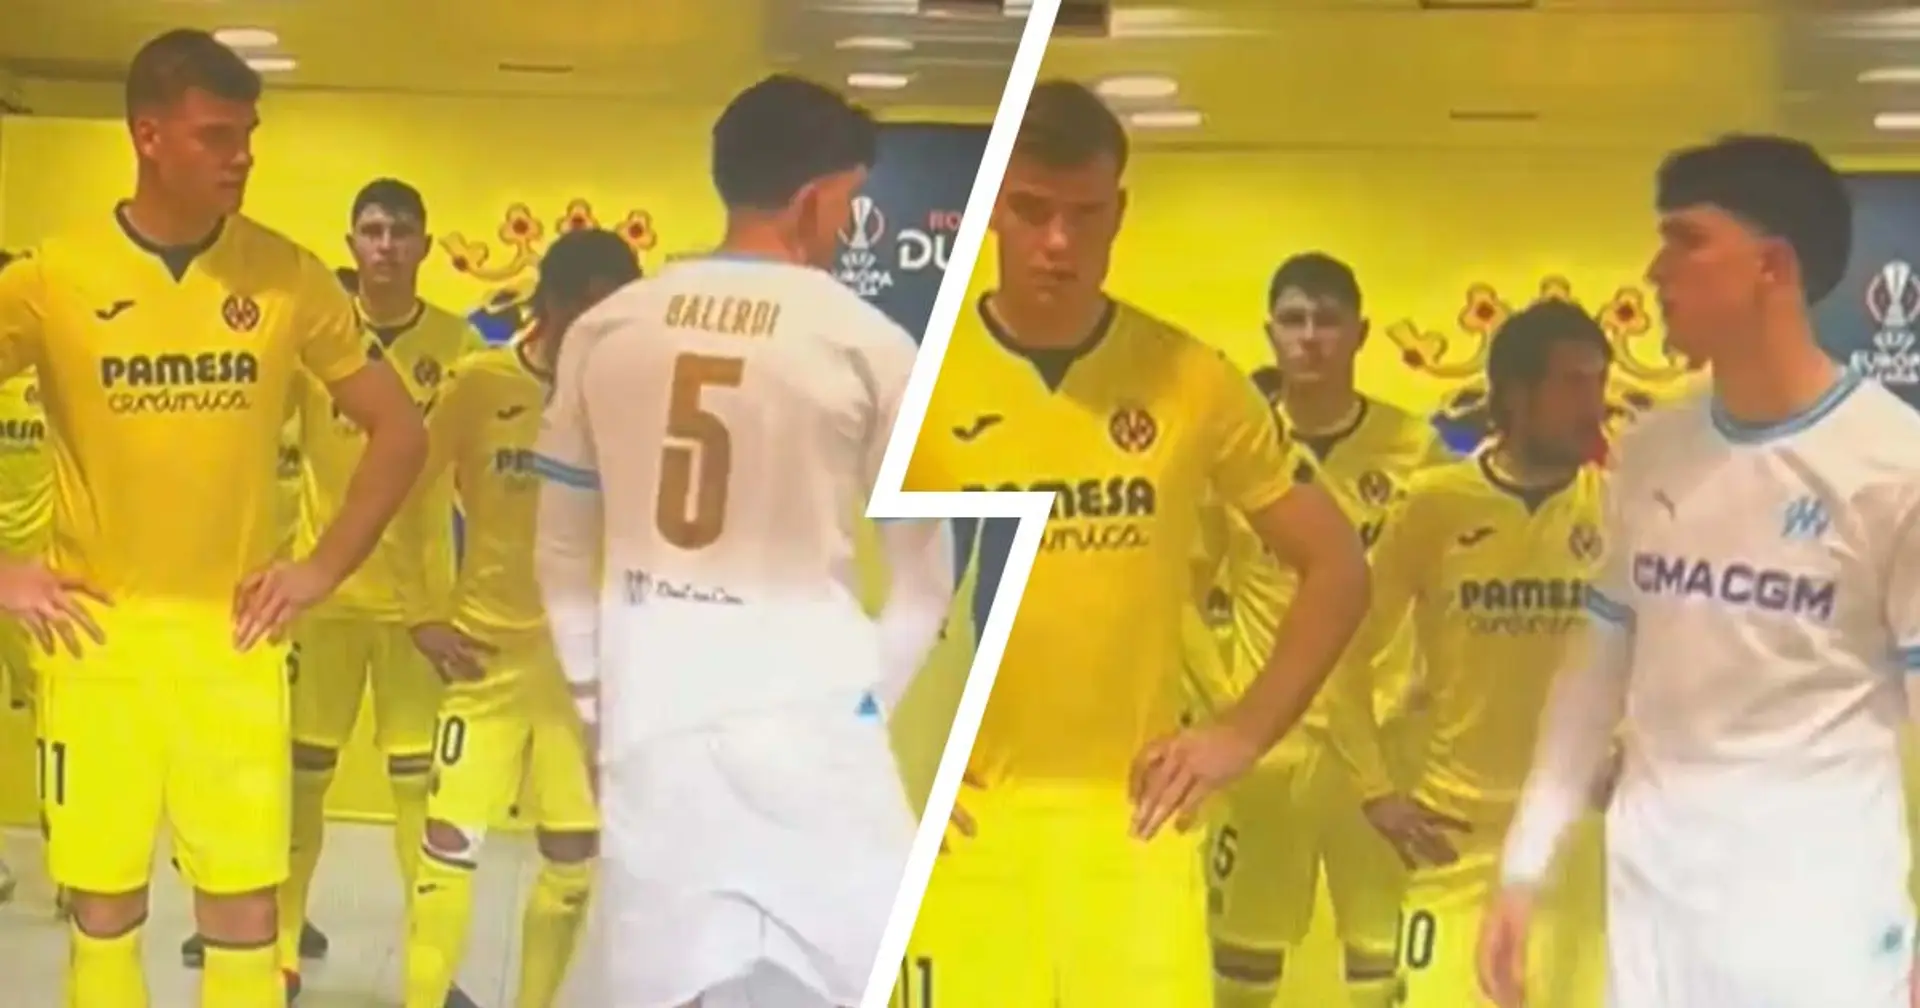 Balerdi fait une provocation très osée contre un joueur de Villarreal - le geste devient viral et les fans sont divisés